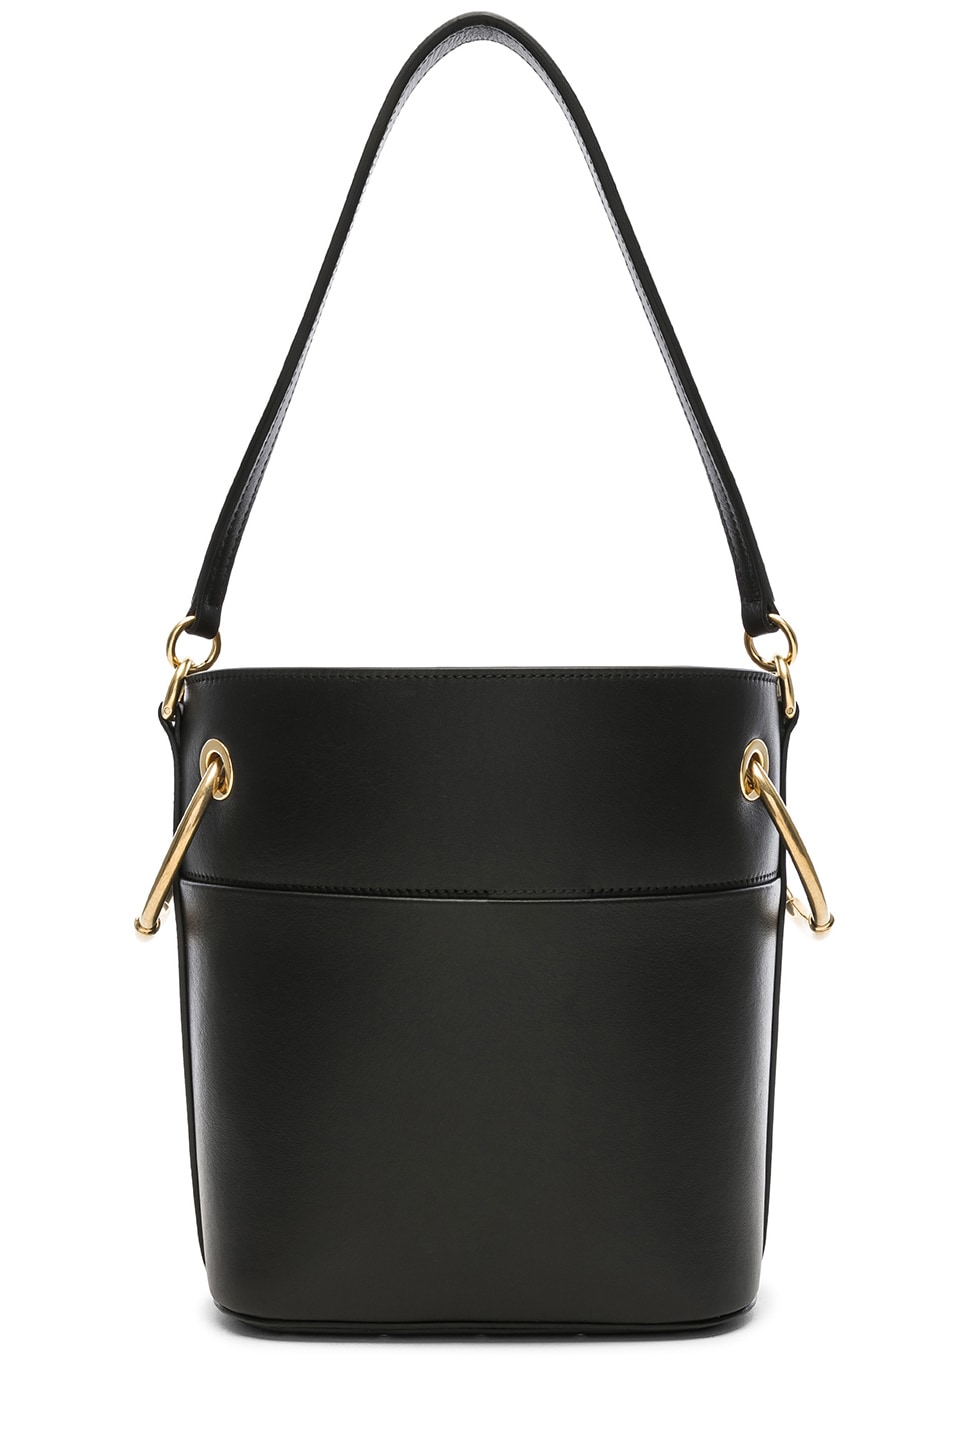 Chloe Small Roy Calfskin Bucket Bag in Black | FWRD